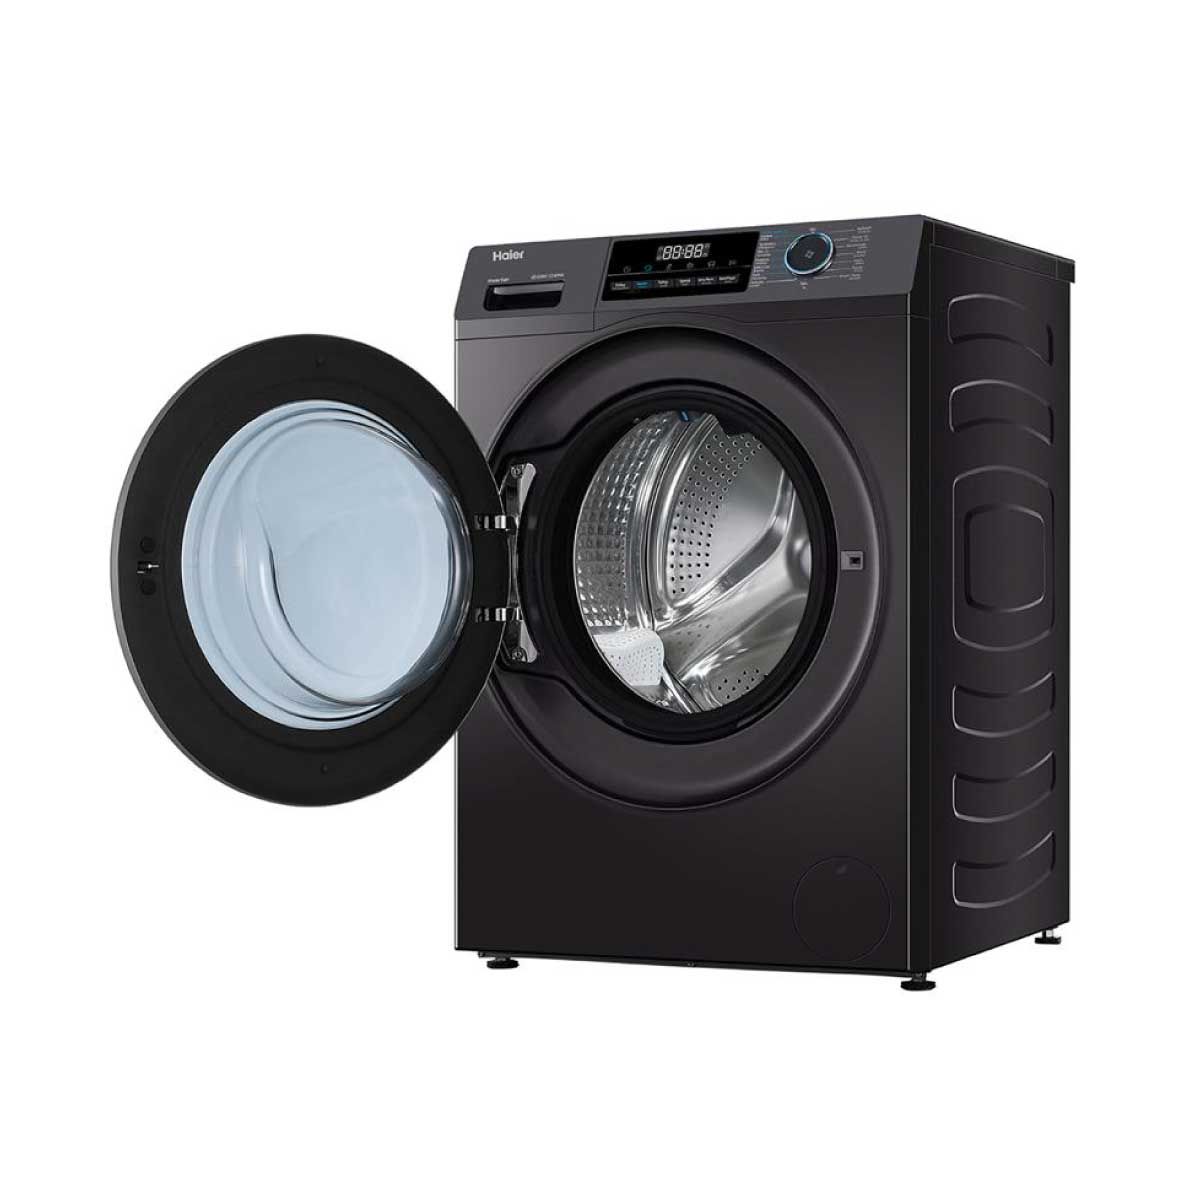 HAIER  เครื่องซักผ้าฝาหน้า 10.5Kg. สีดำ รุ่นHW105-BP14929AS6